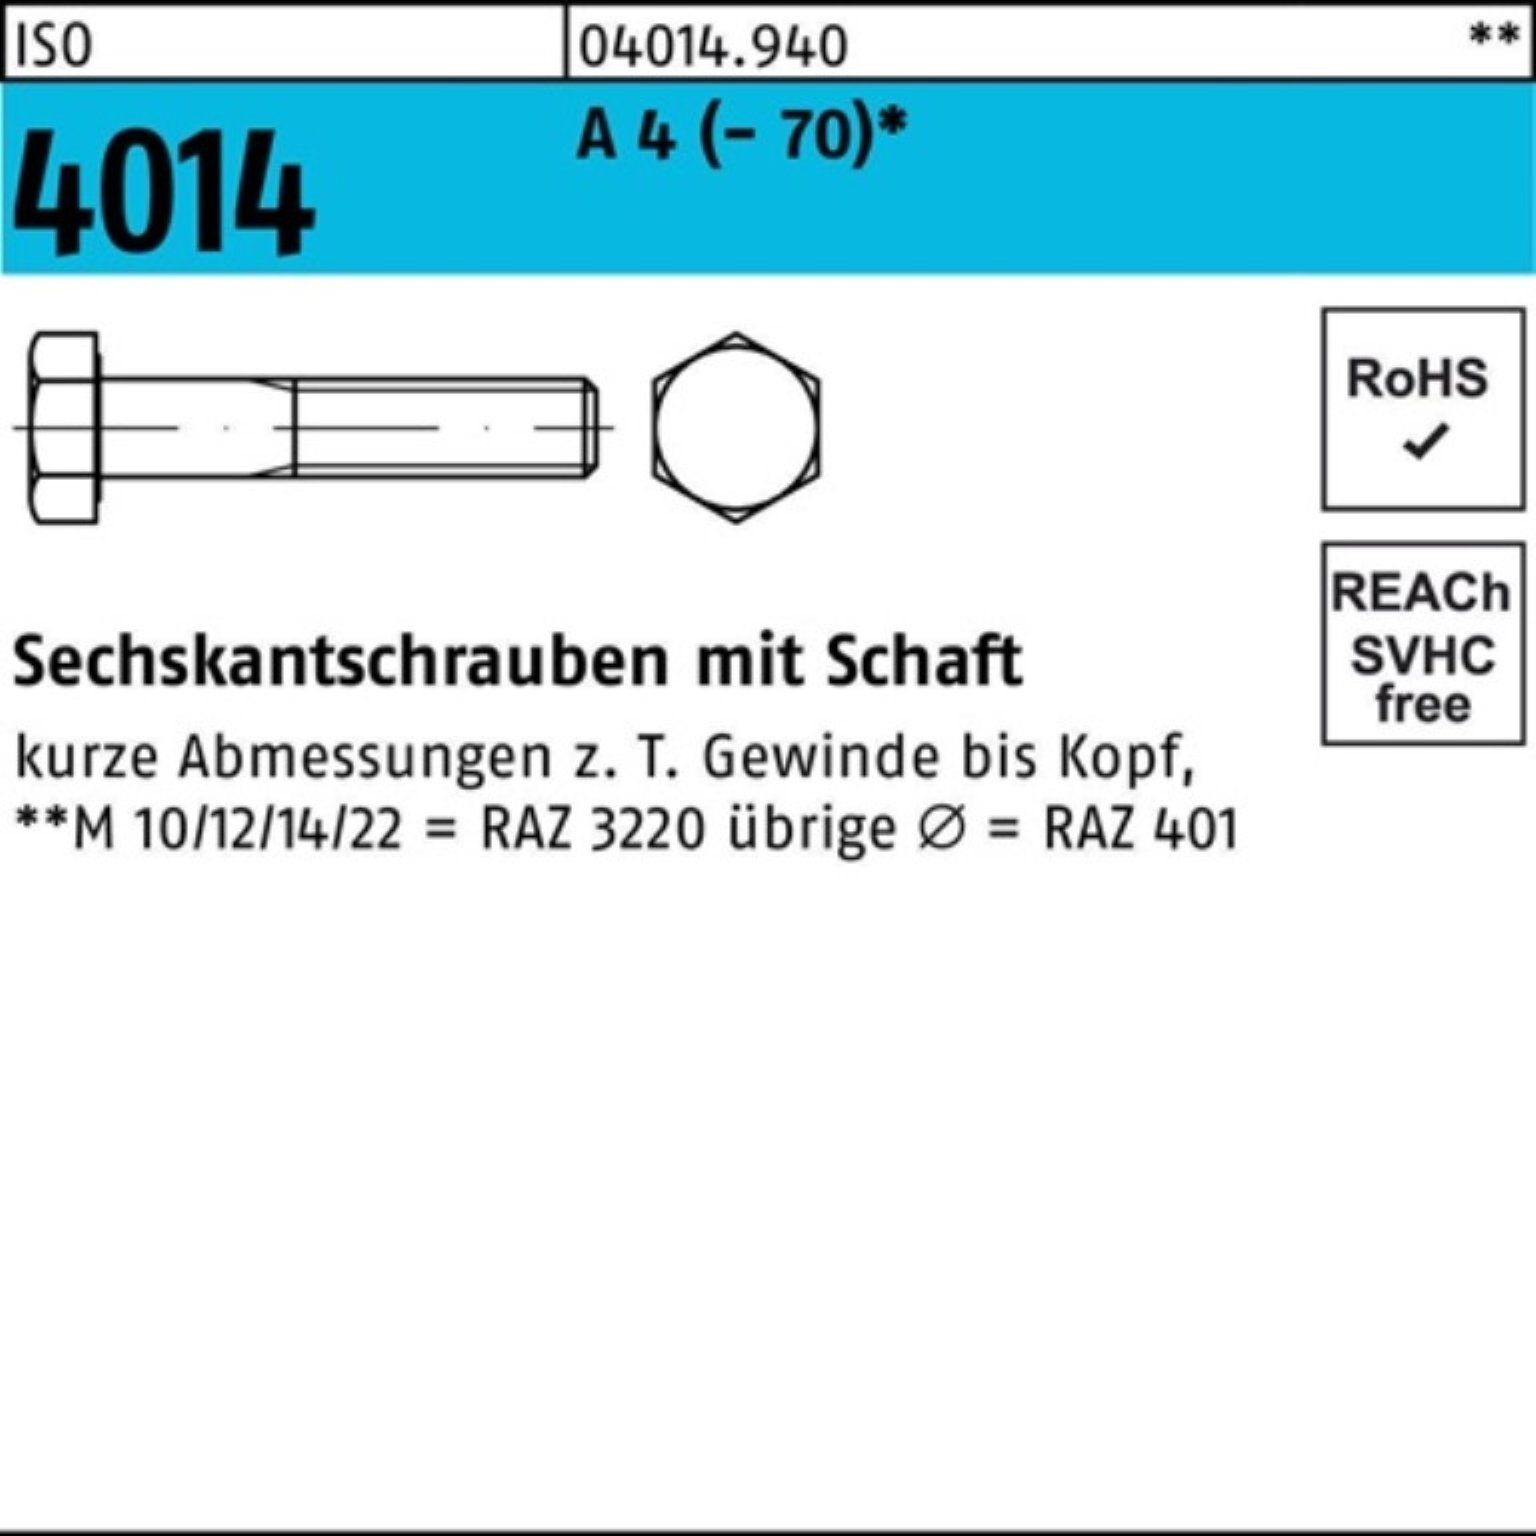 Bufab Sechskantschraube 100er Pack Sechskantschraube 4014 A 1 ISO ISO Stück 170 Schaft 4 M30x